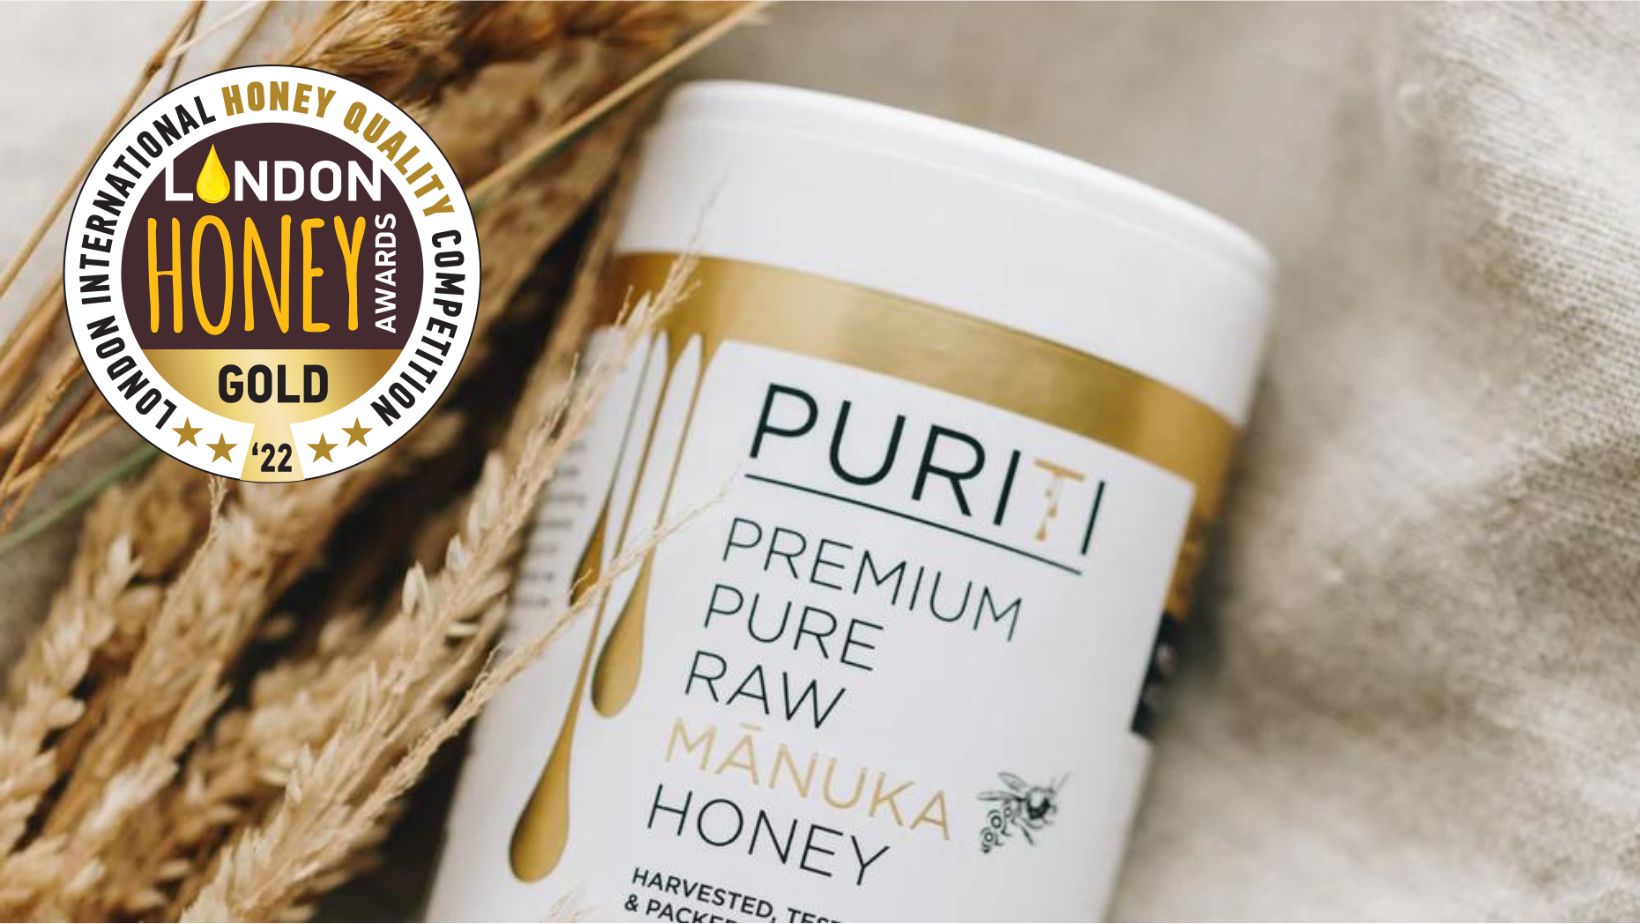 PURITI Wins Multiple Awards at the 2022 London Honey Awards - PURITI